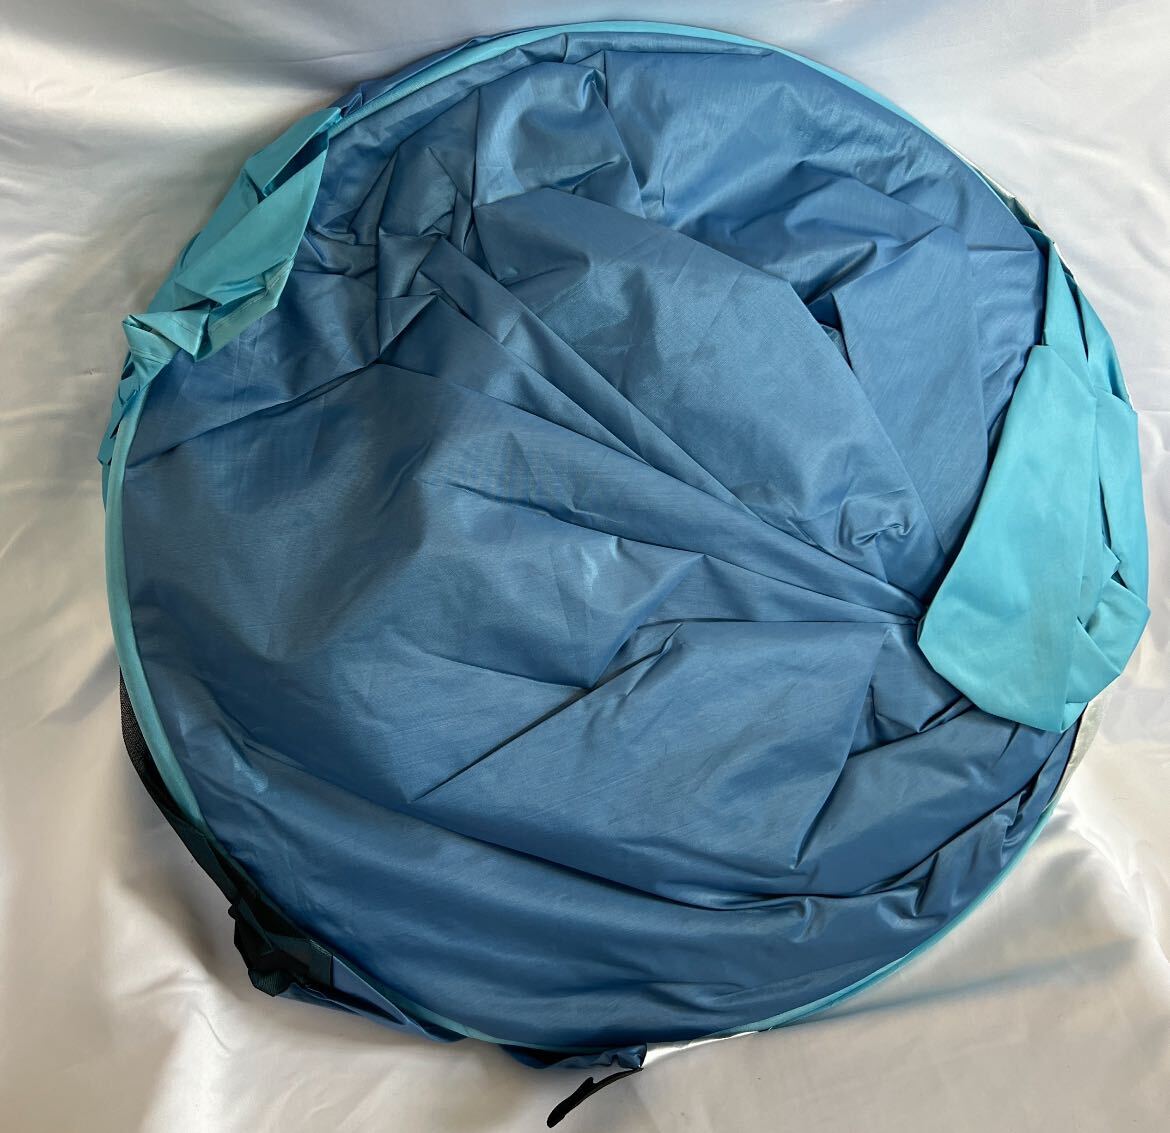 ポップアップテント ワンタッチテント ブルー 青色 カーテン 有り 紫外線対策 人気 2～3人用